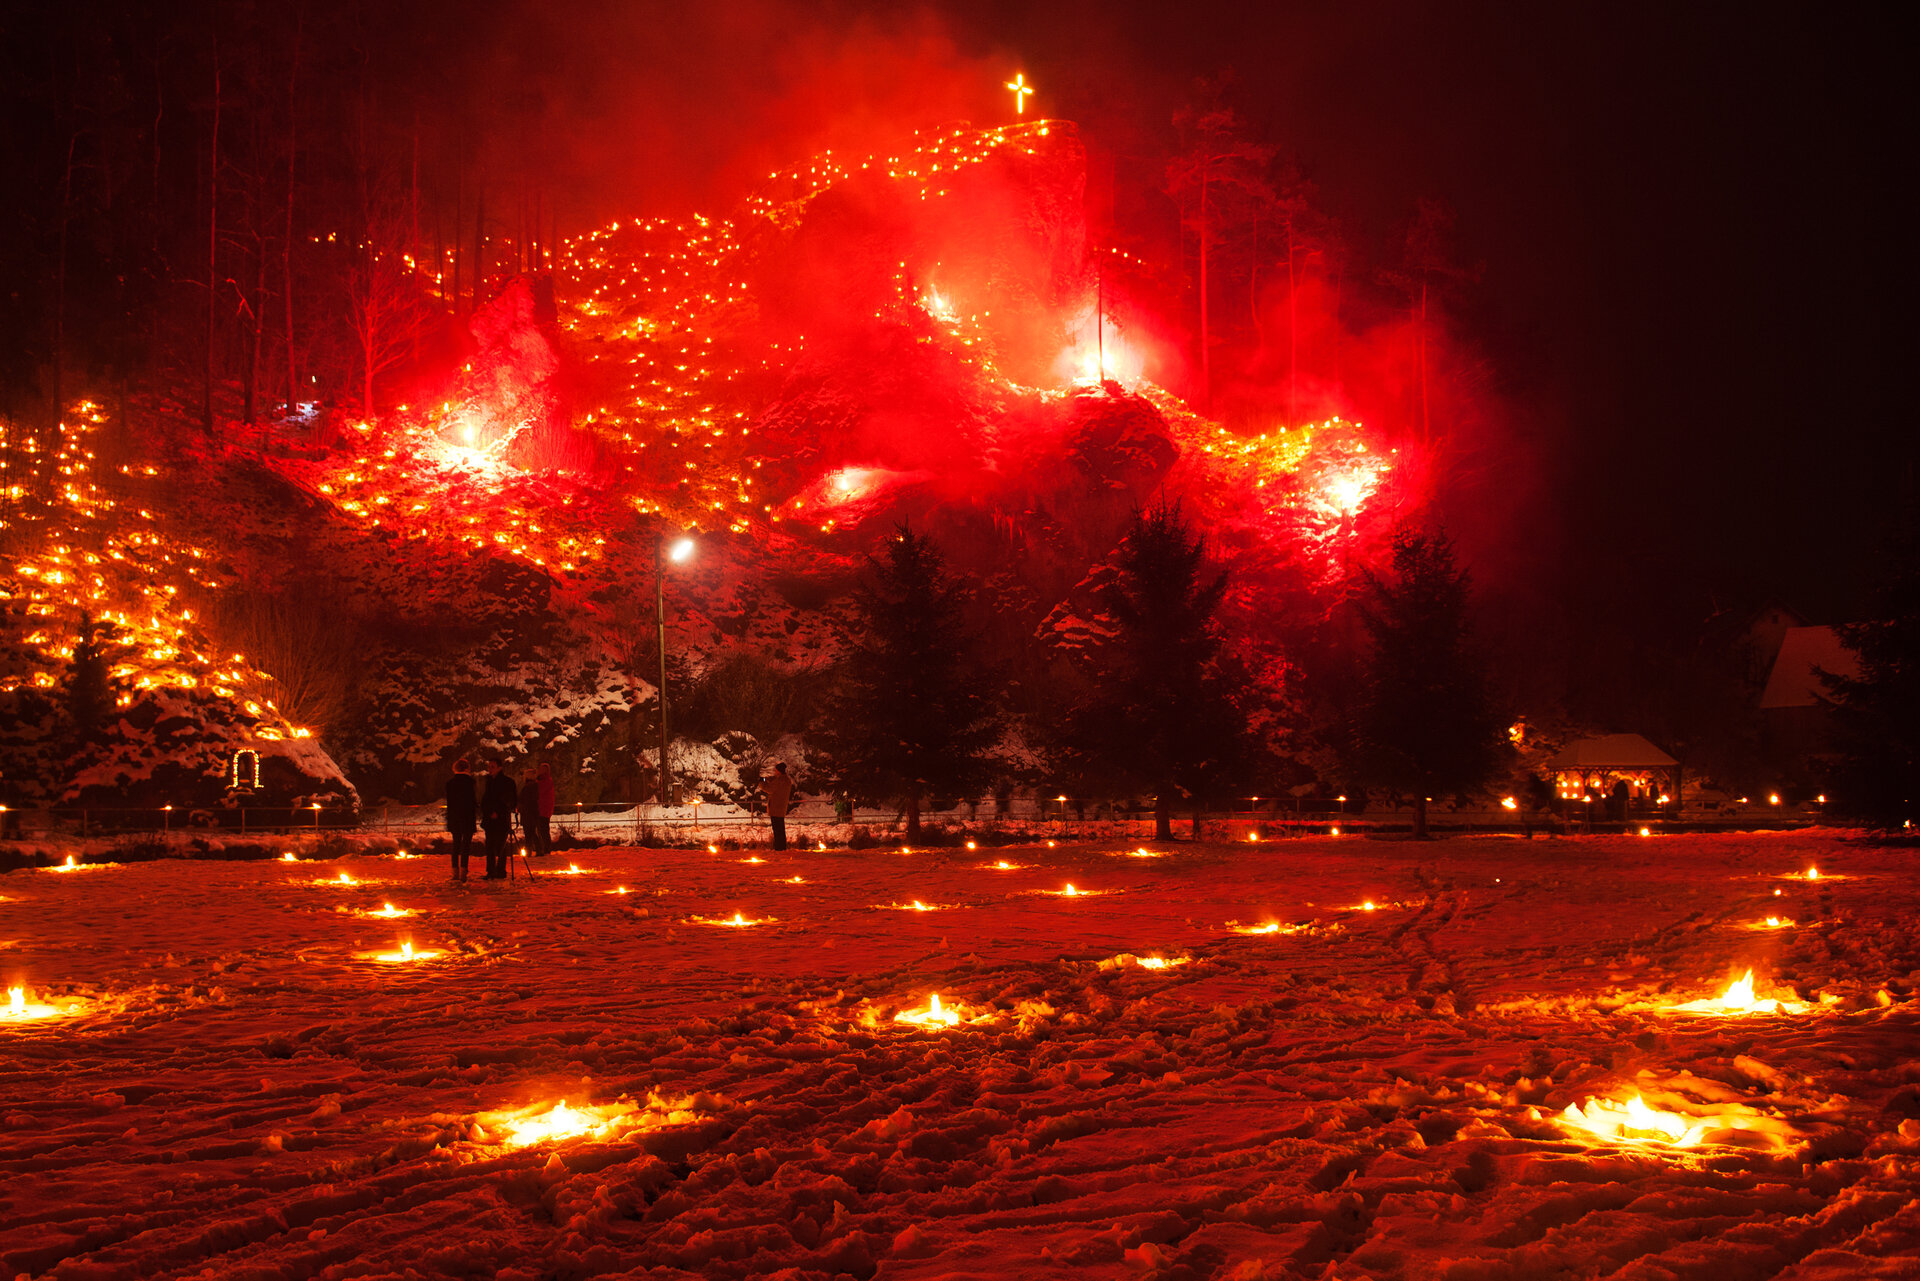 Im Vordergrund stehen Menschen auf einer schneebedeckten Wiese, in der kleine Feuer brennen. Im Hintergrund erhebt sich ein felsiger Berg, auf dem rote Feuer und eine Kreuz leuchten. 